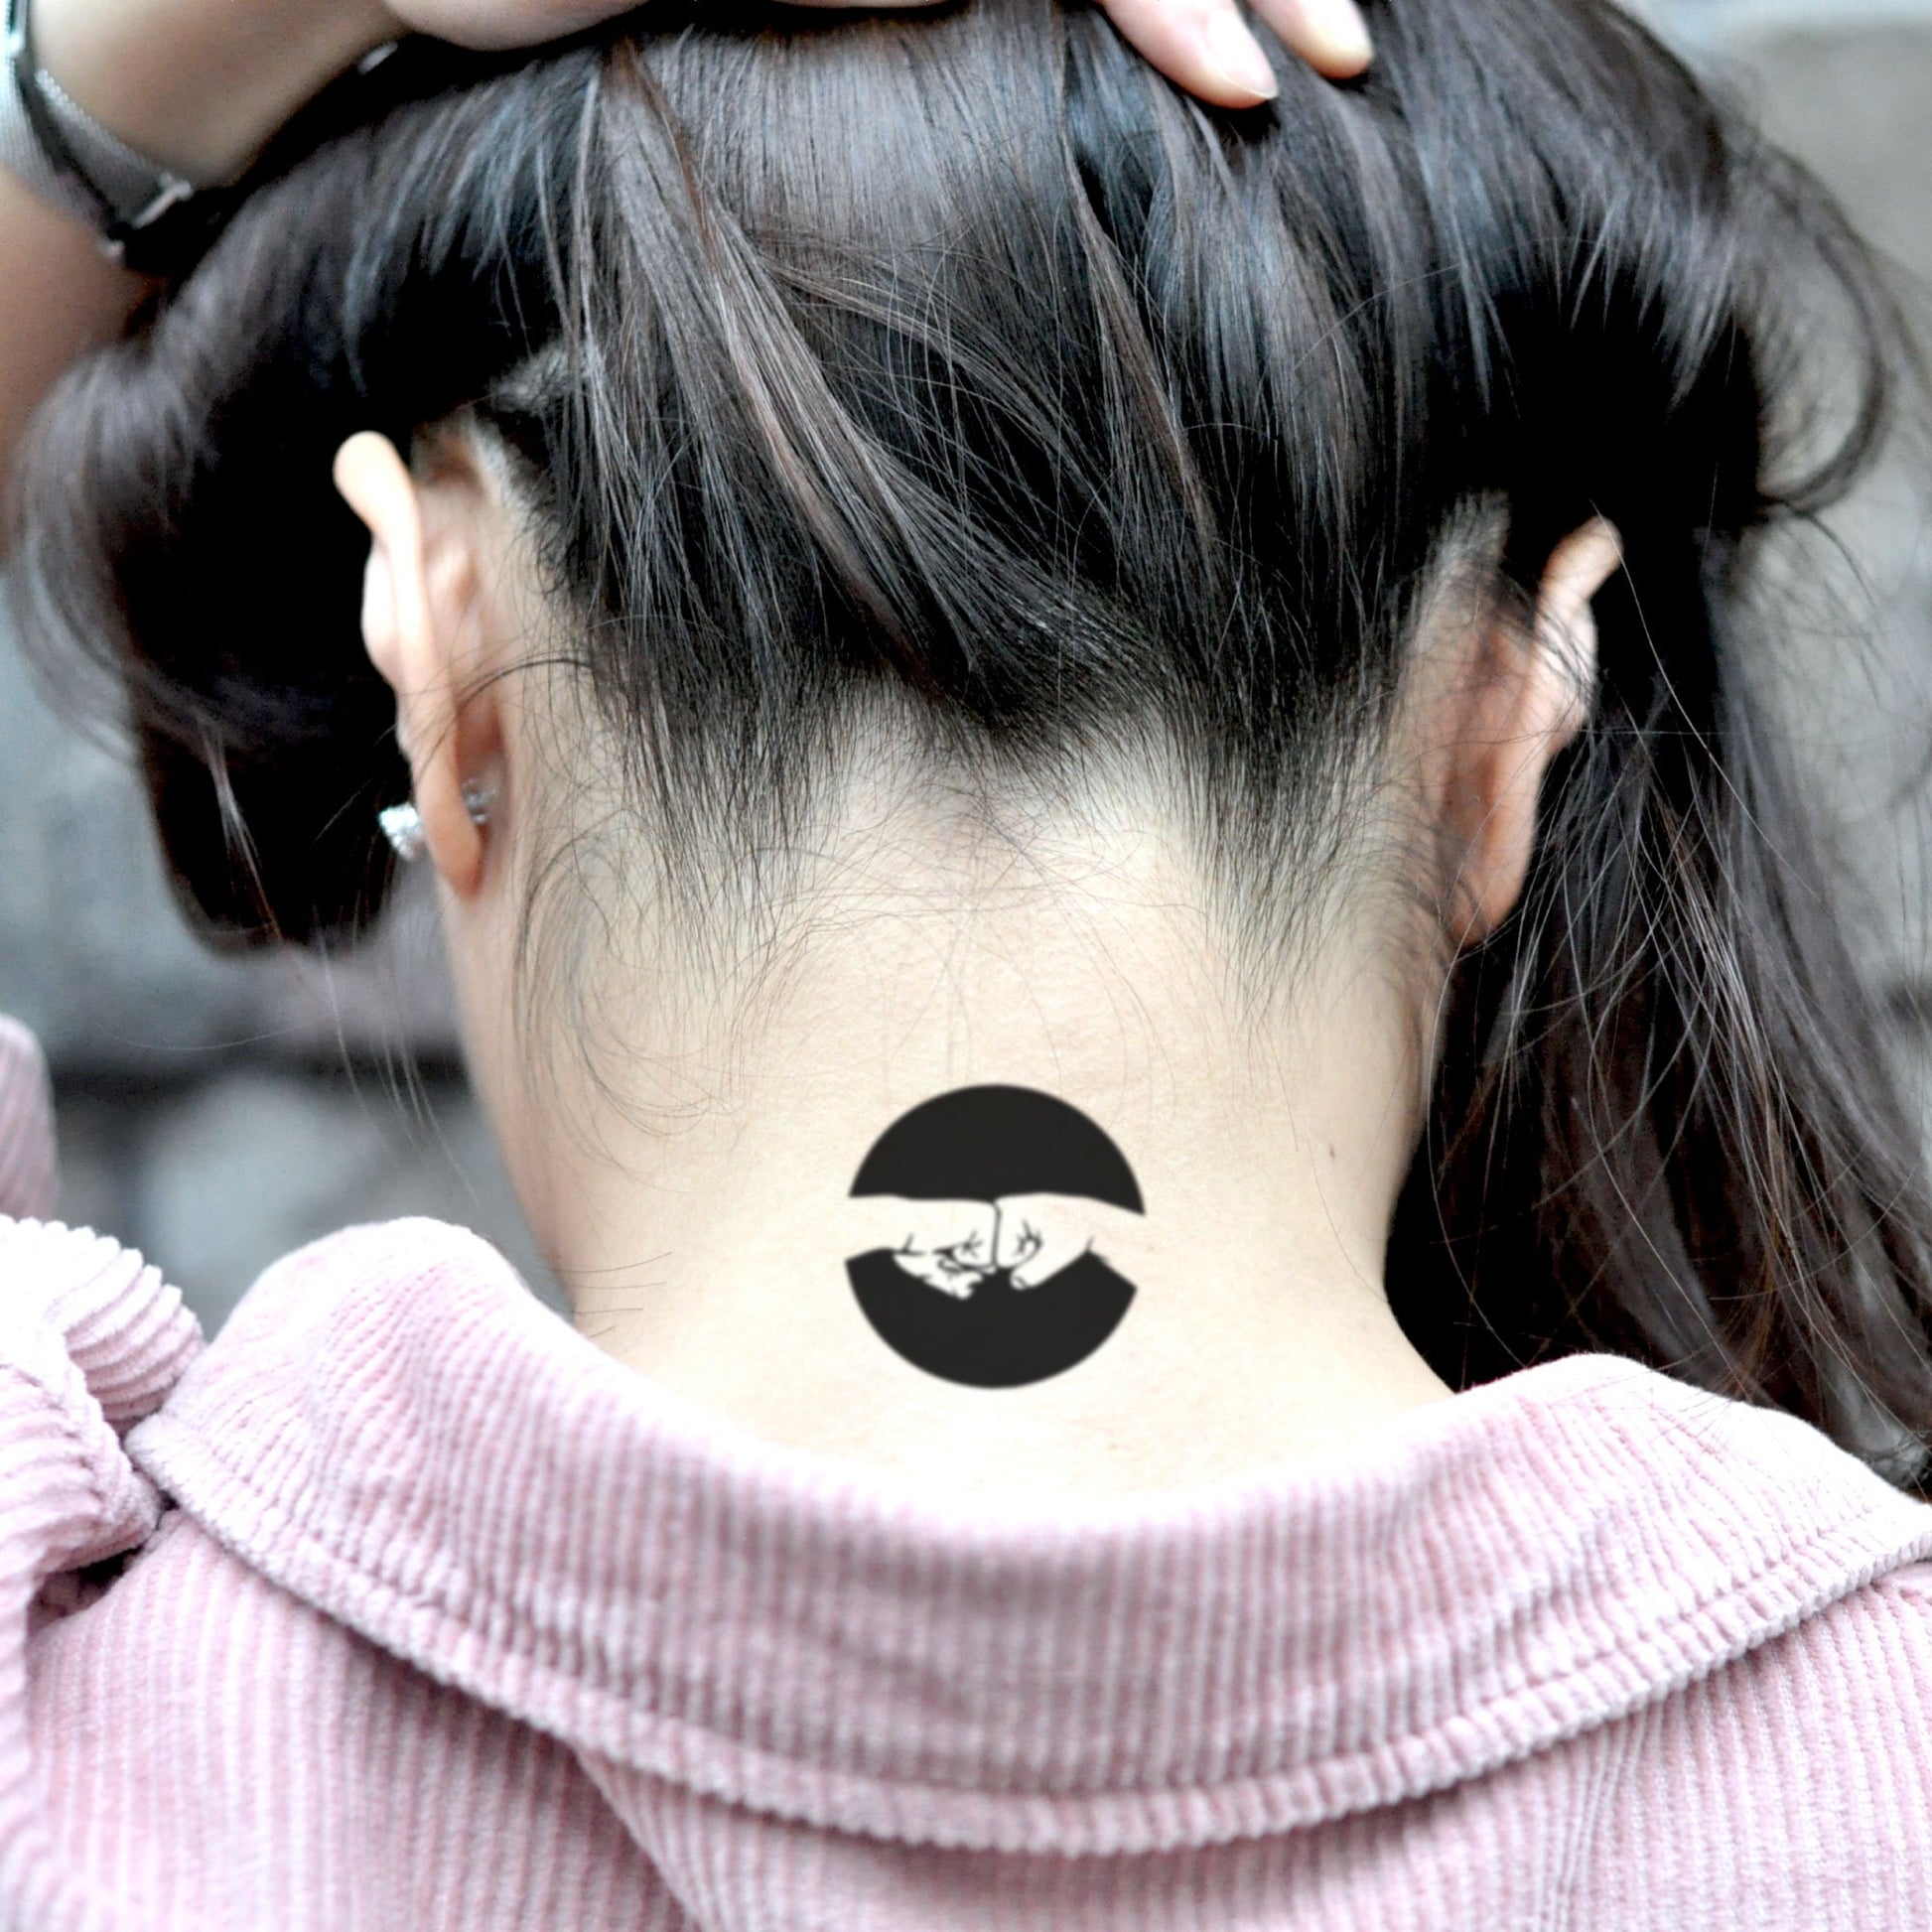 fake small fist bump illustrative temporary tattoo sticker design idea on neck